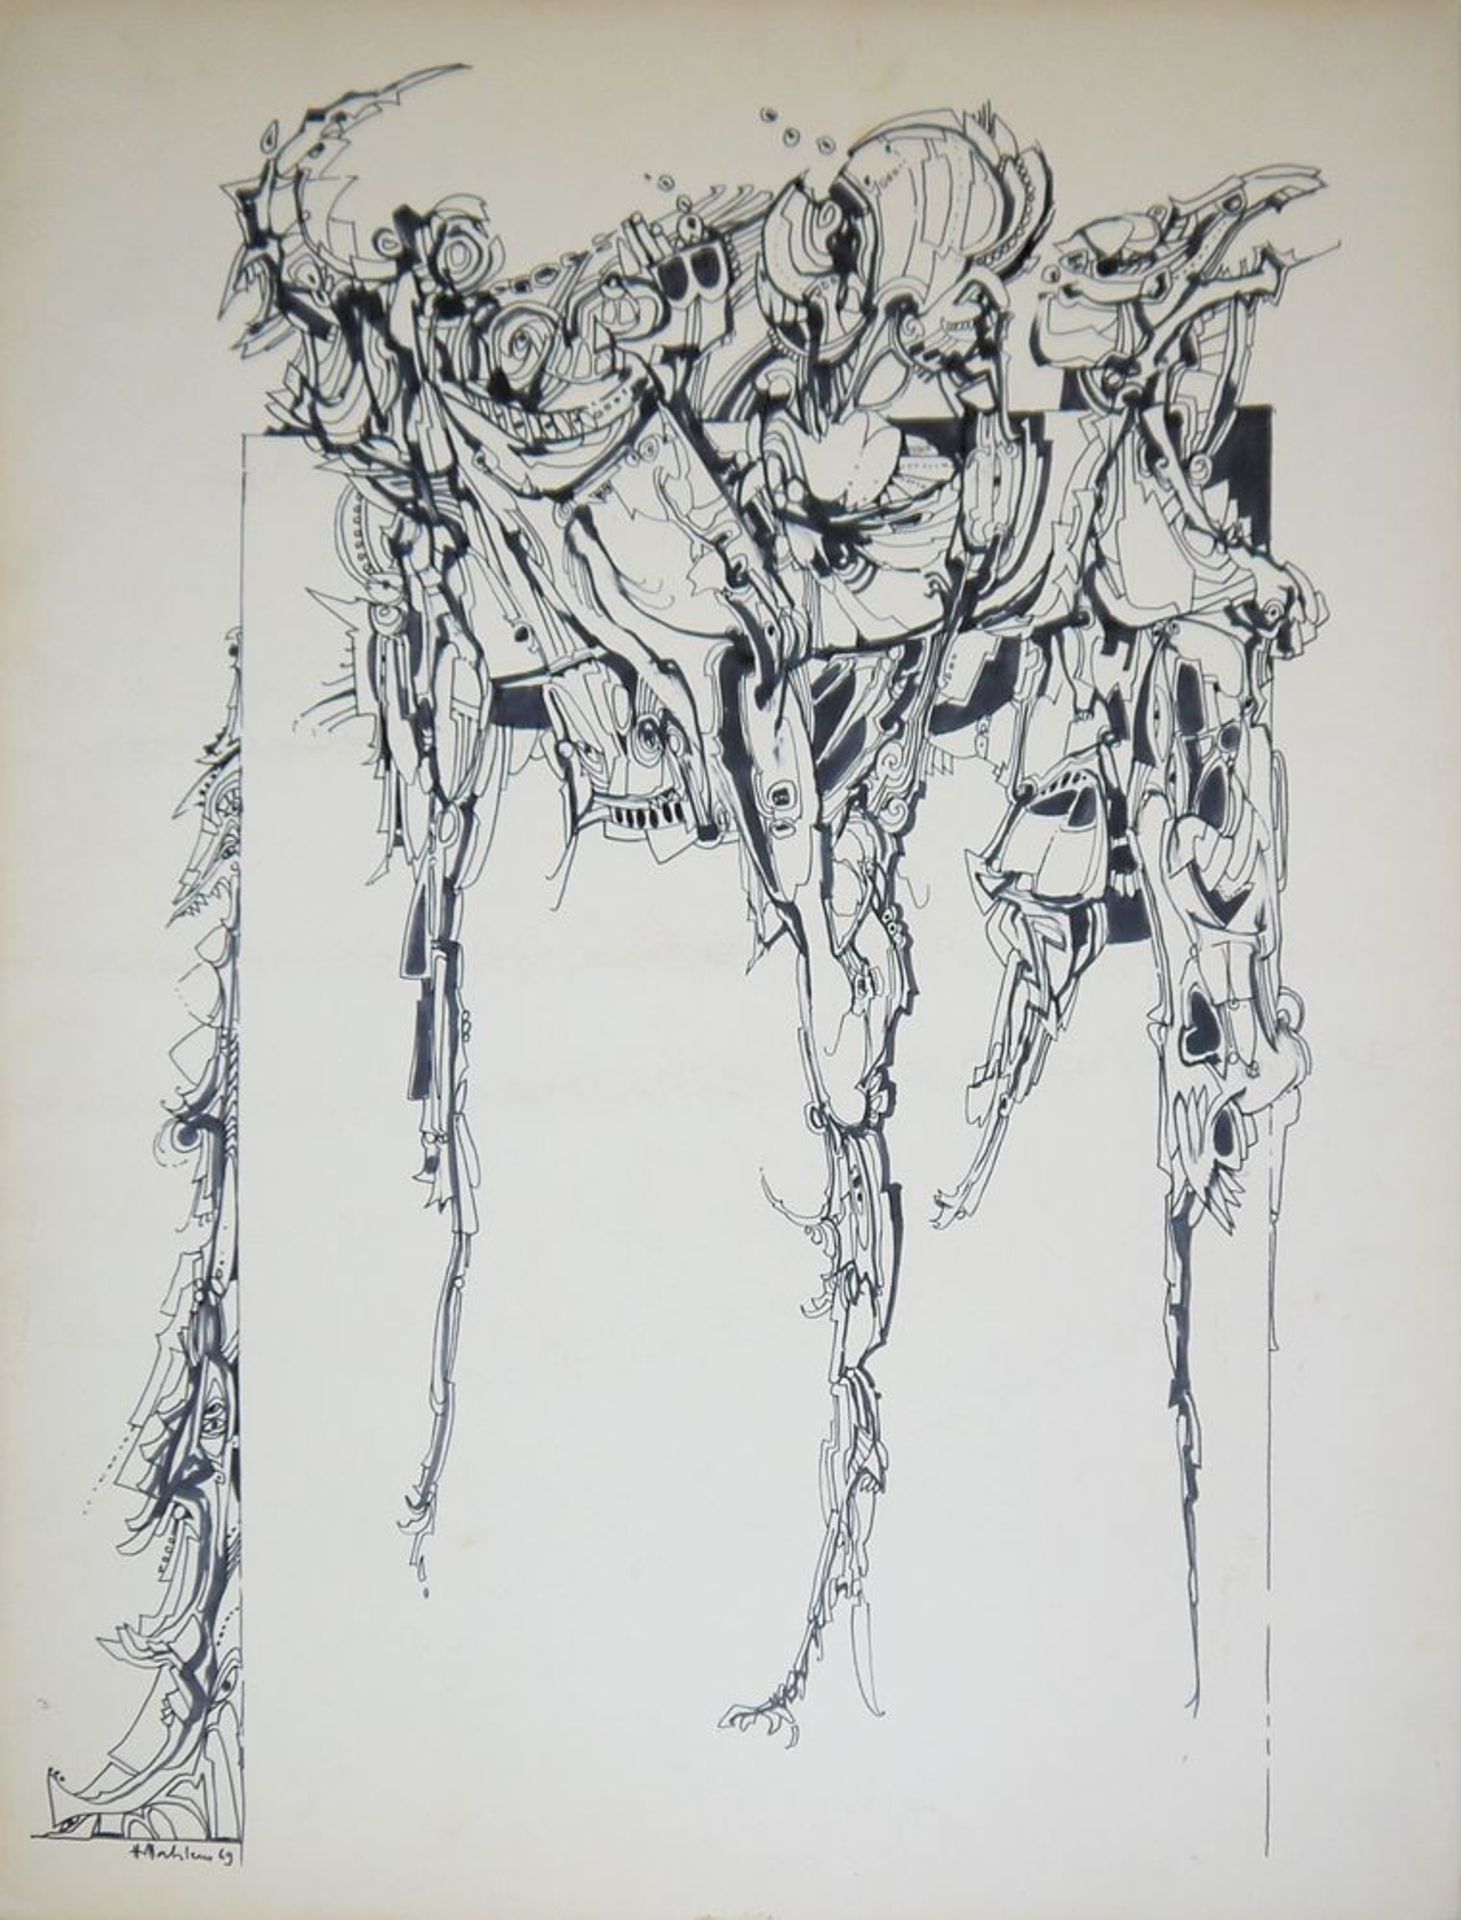 Hans Dahlem, Abstrakte Komposition, signierte Filzstiftzeichnung von 1969, o. R